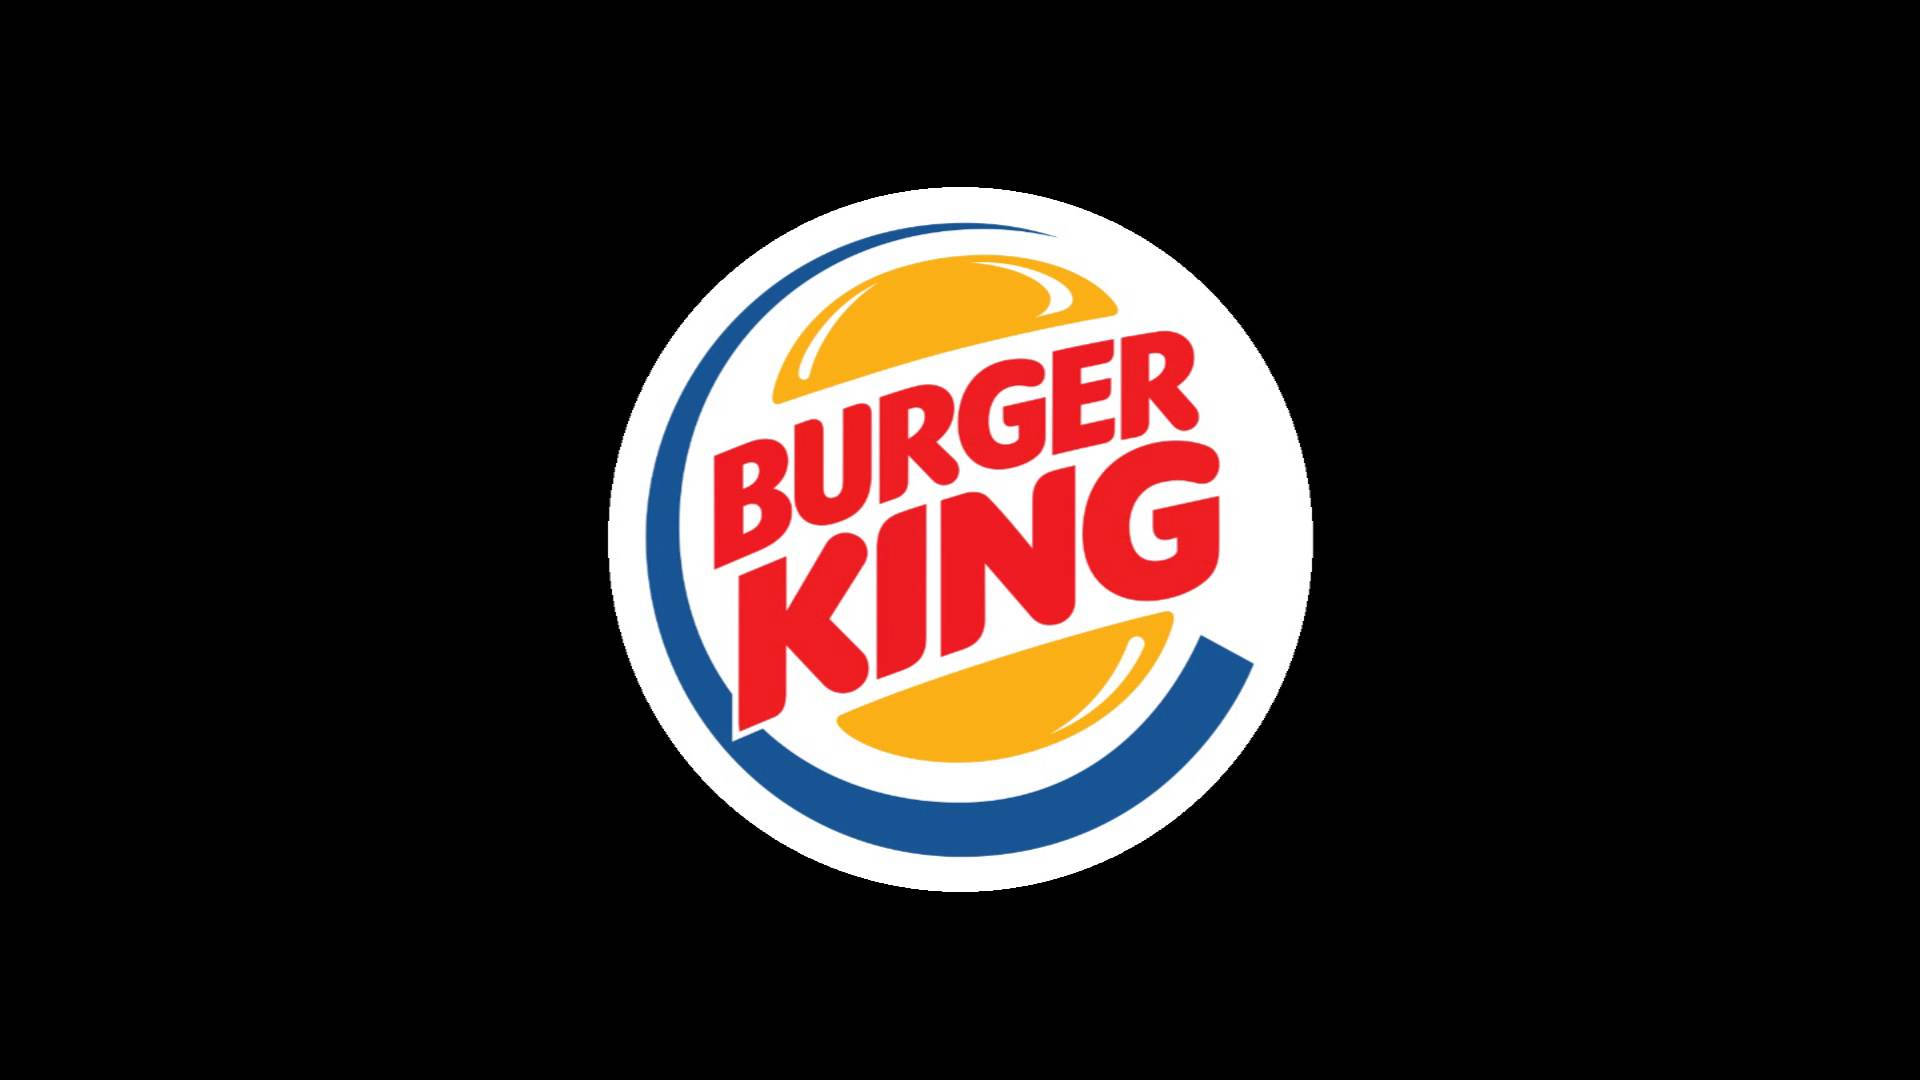 Burgerkings Logotyp På Svart. Wallpaper